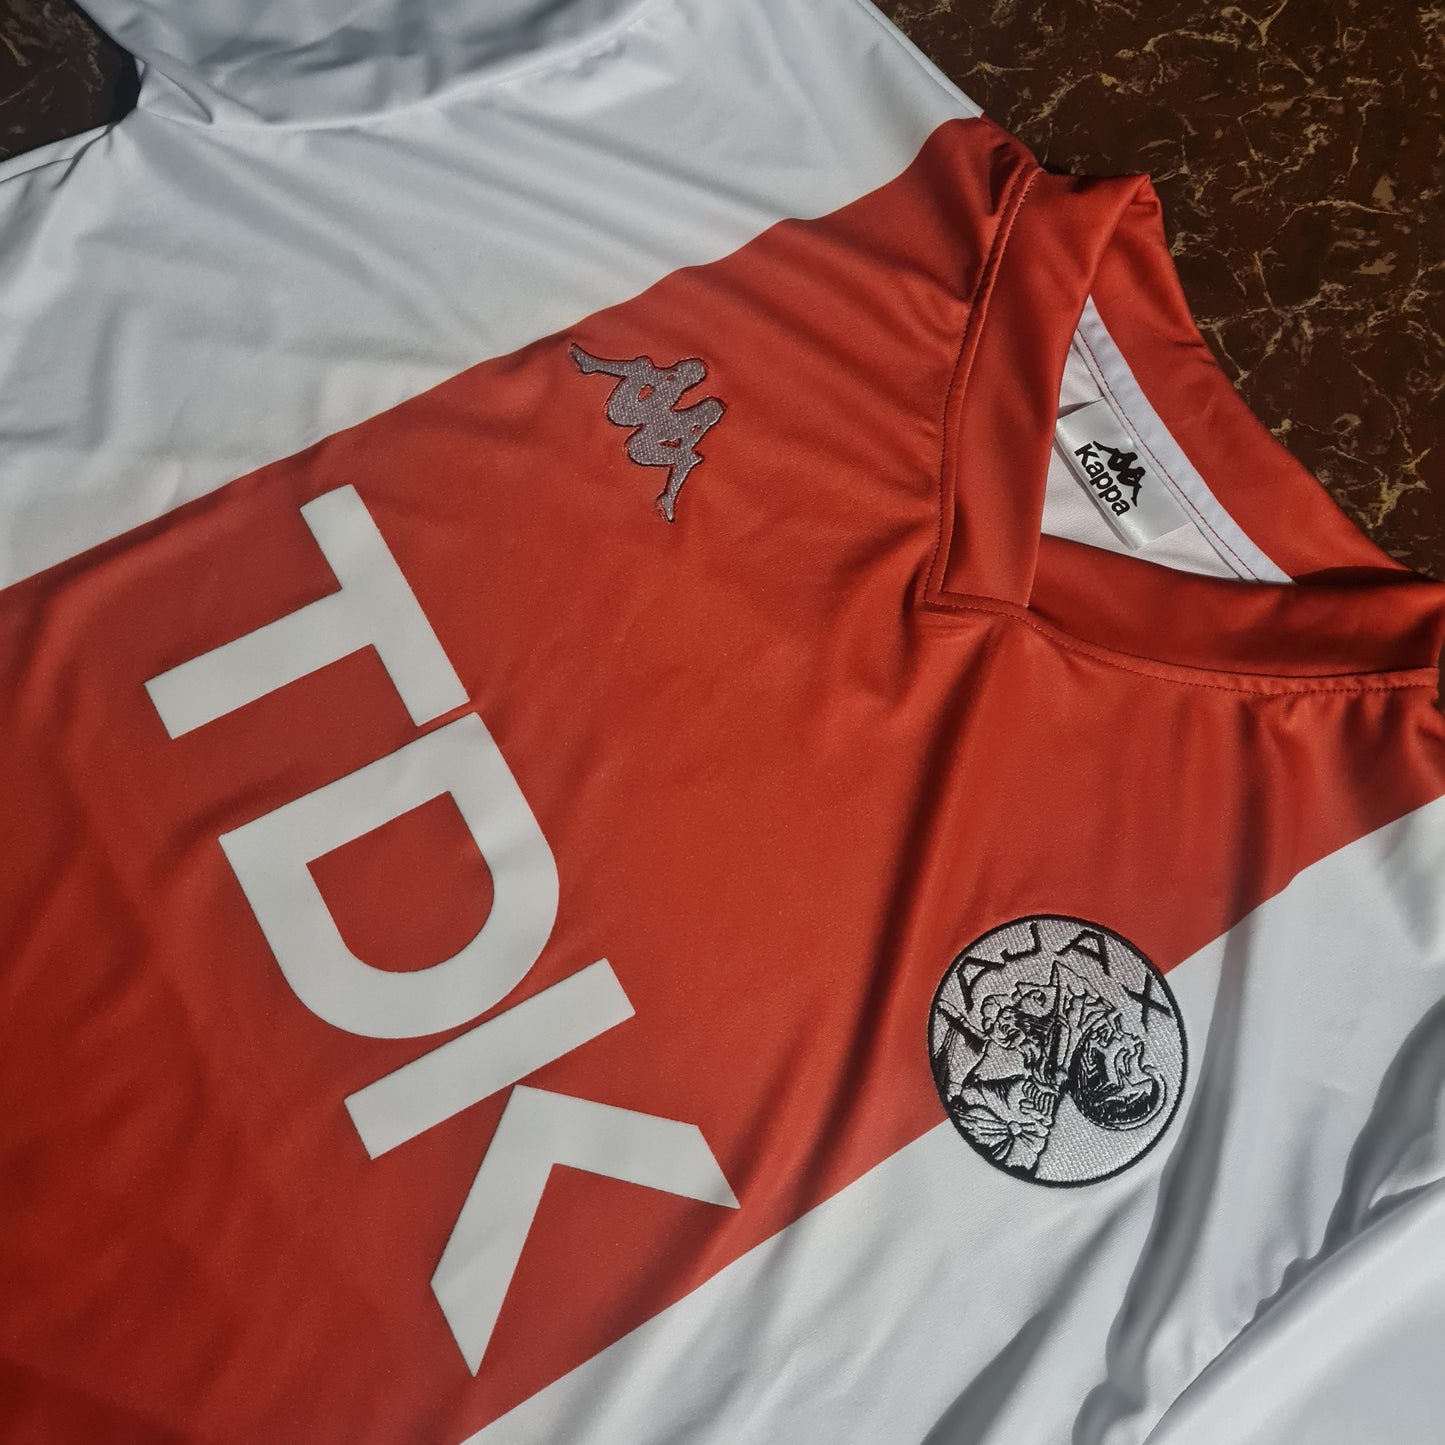 1985-1987 Ajax Home Shirt